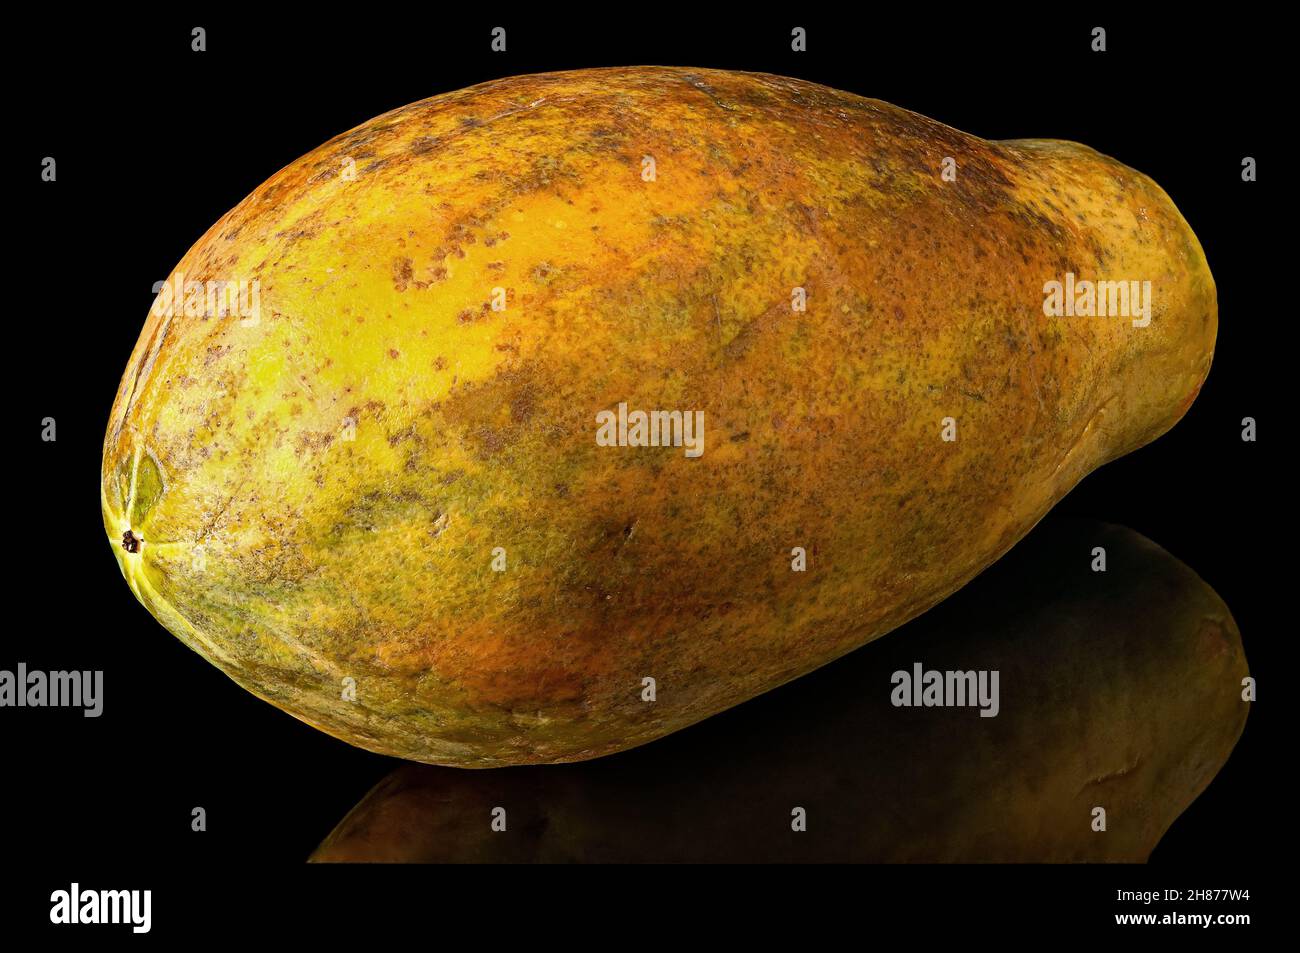 Papaya whole with reflection isolated on black background Stock Photo